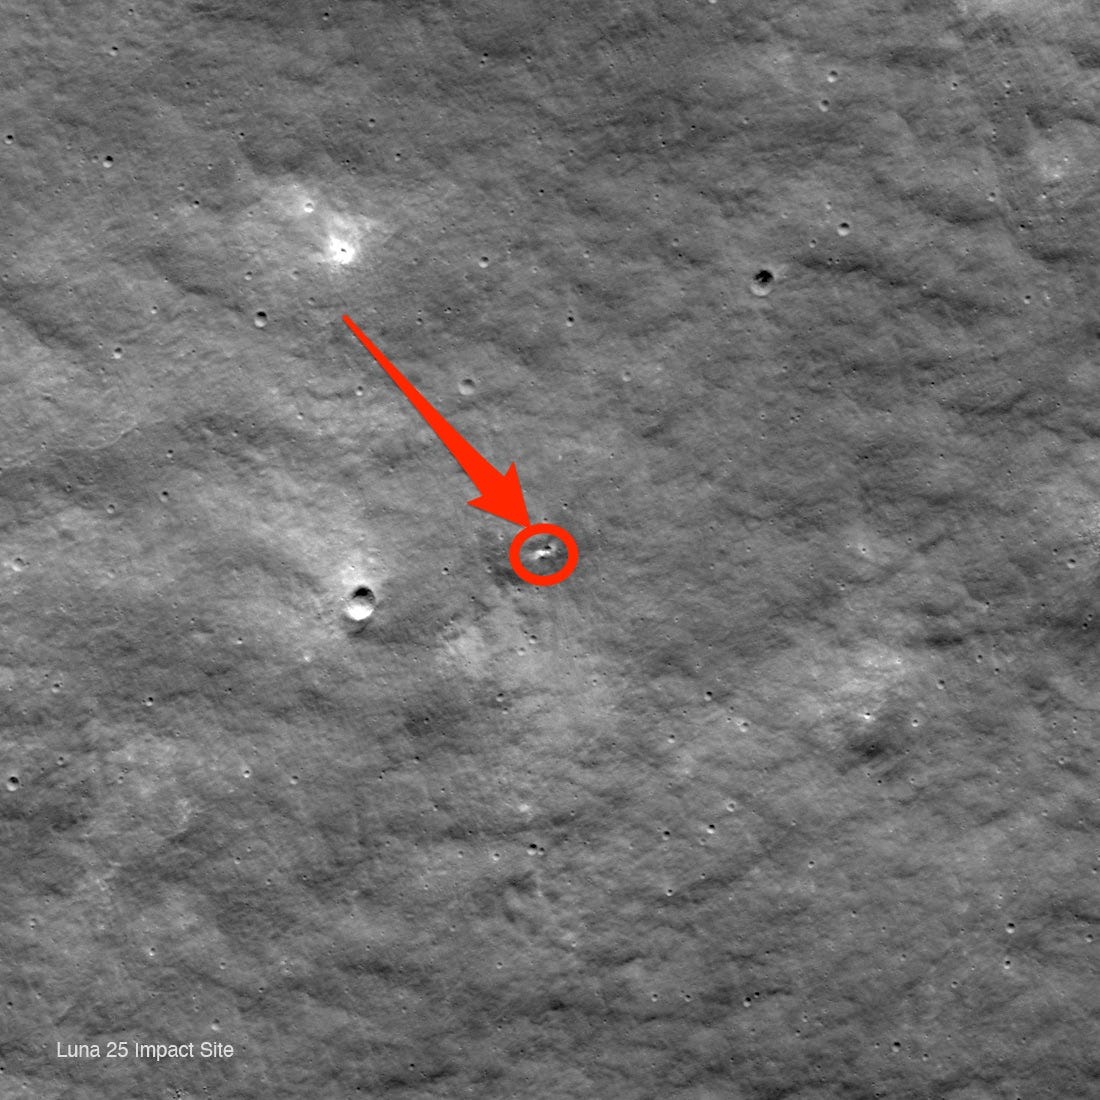 Neuer Krater auf dem Mond soll Ort des Absturzes des Luna-25-Landers sein.